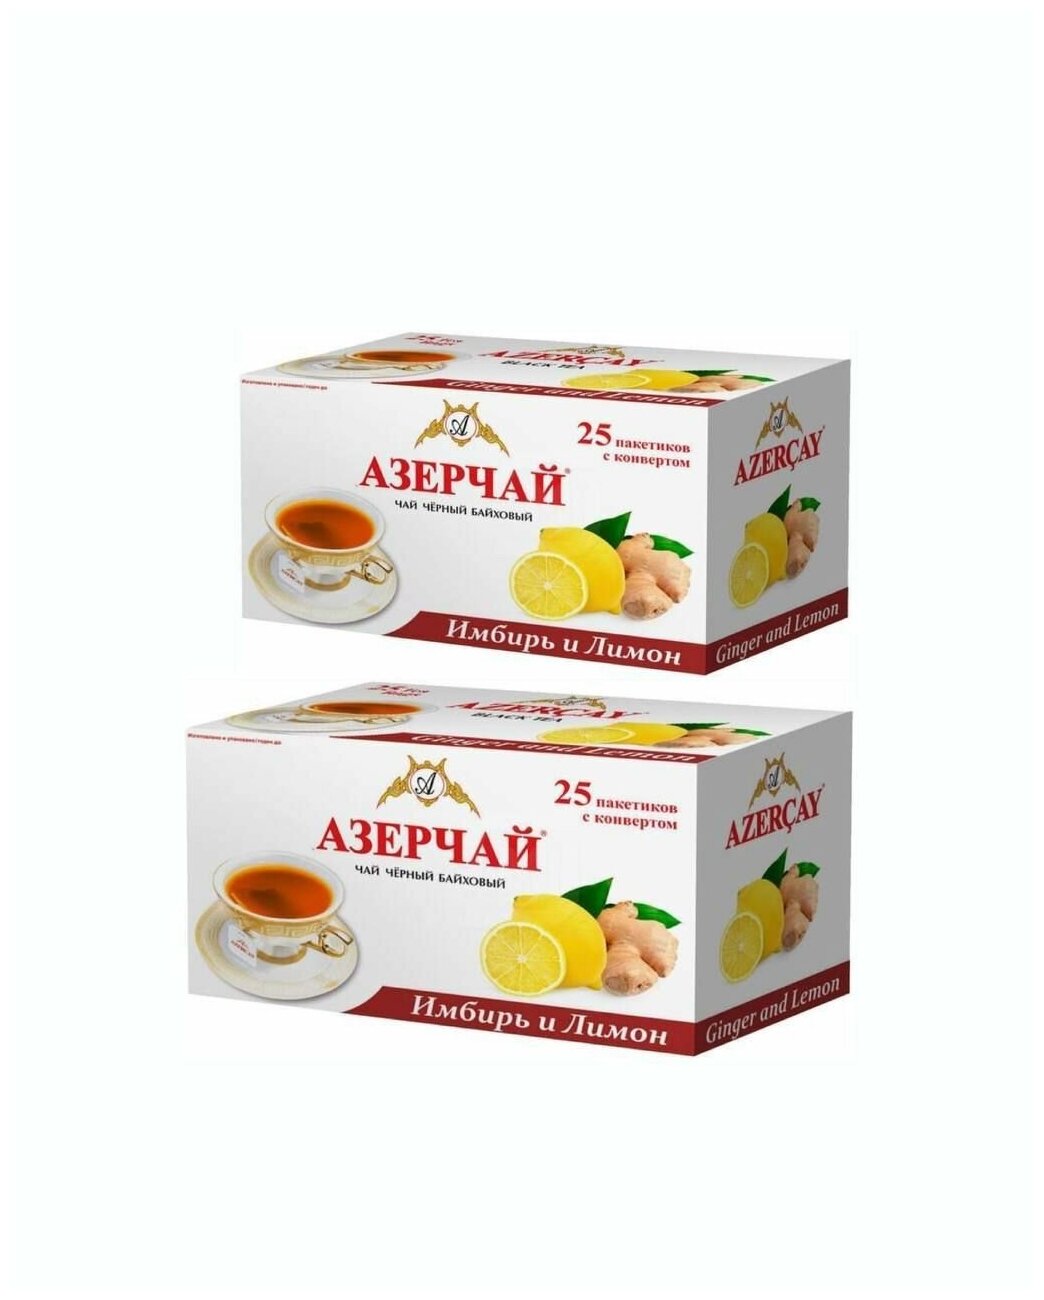 Чай Азерчай черный в пакетиках "Имбирь и лимон" 25 пакетов - 2 шт